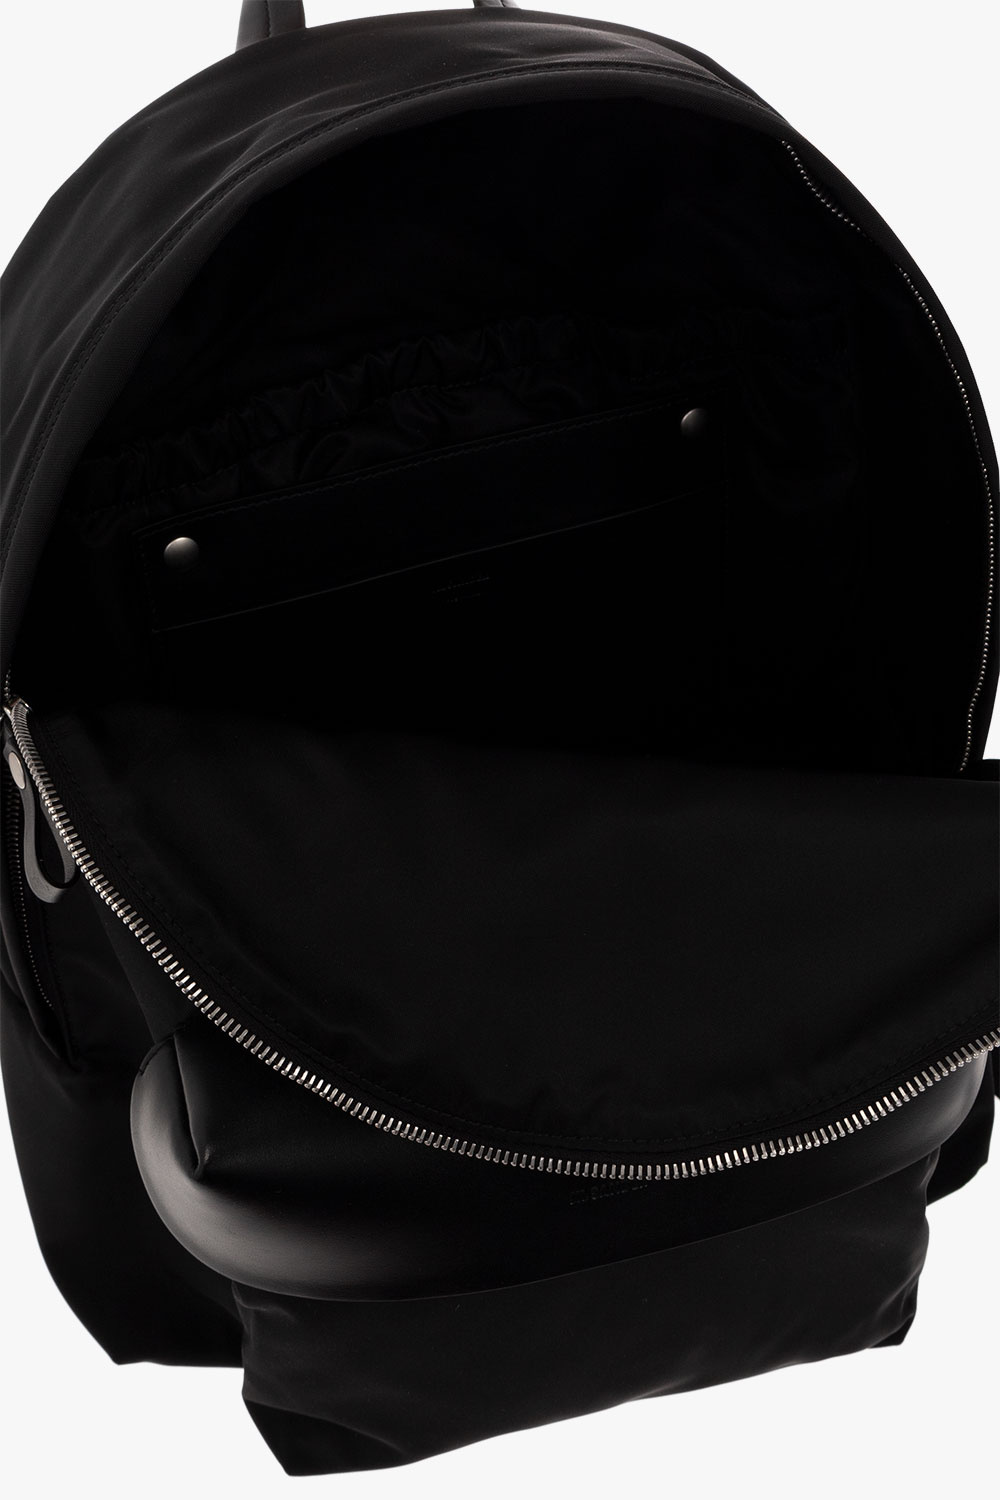 JIL SANDER Backpack with pocket